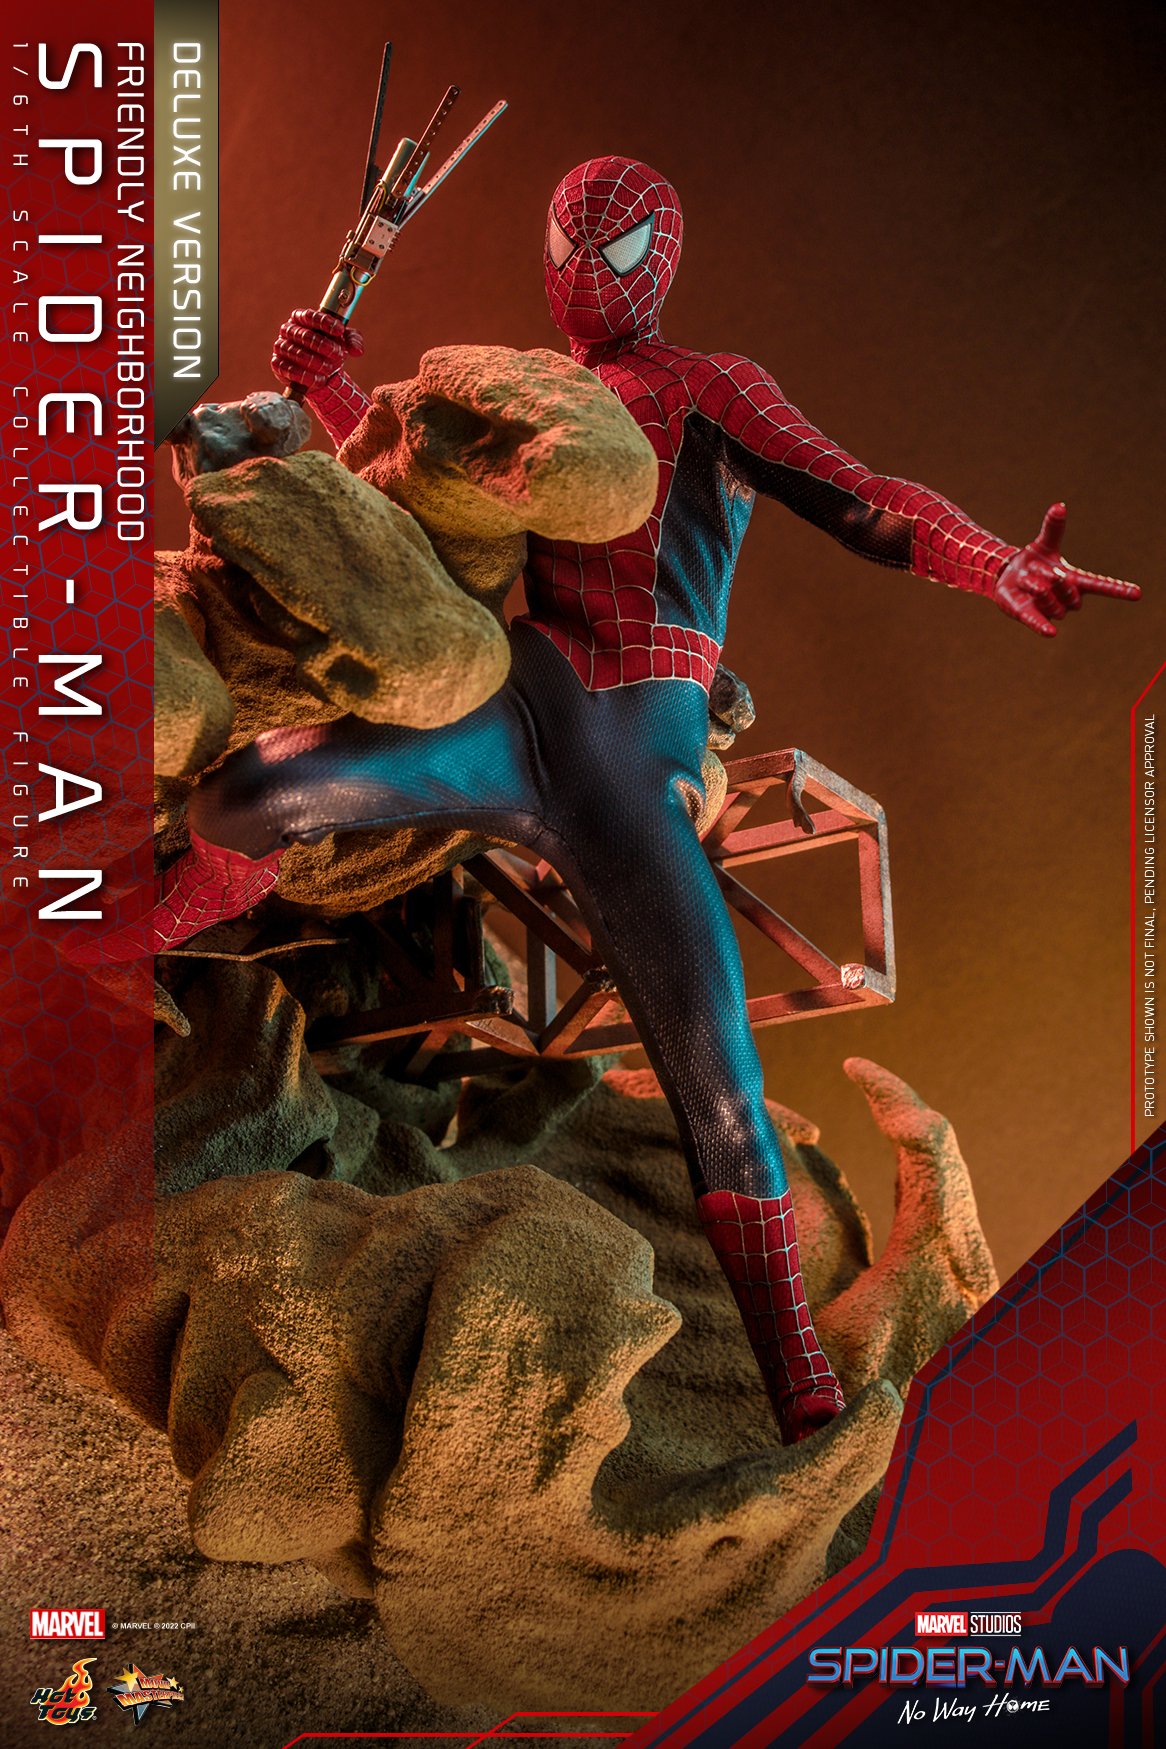 Spider-Man 8